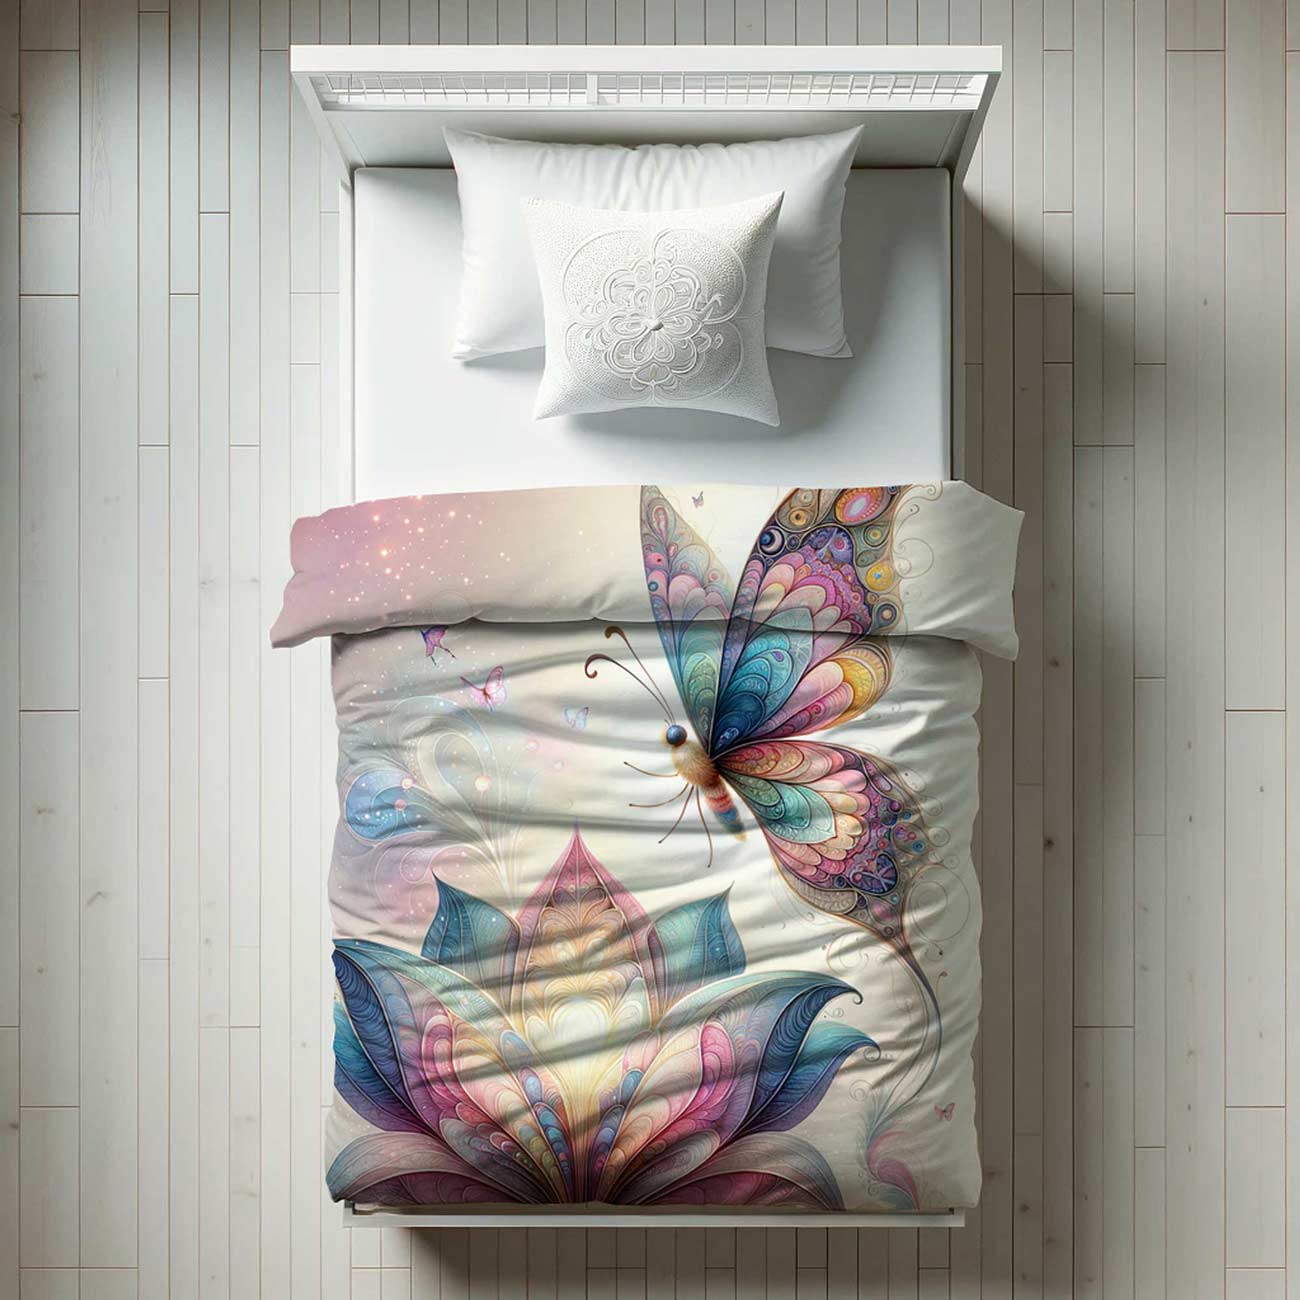 Butterfly duvet cover for girl's bedroom